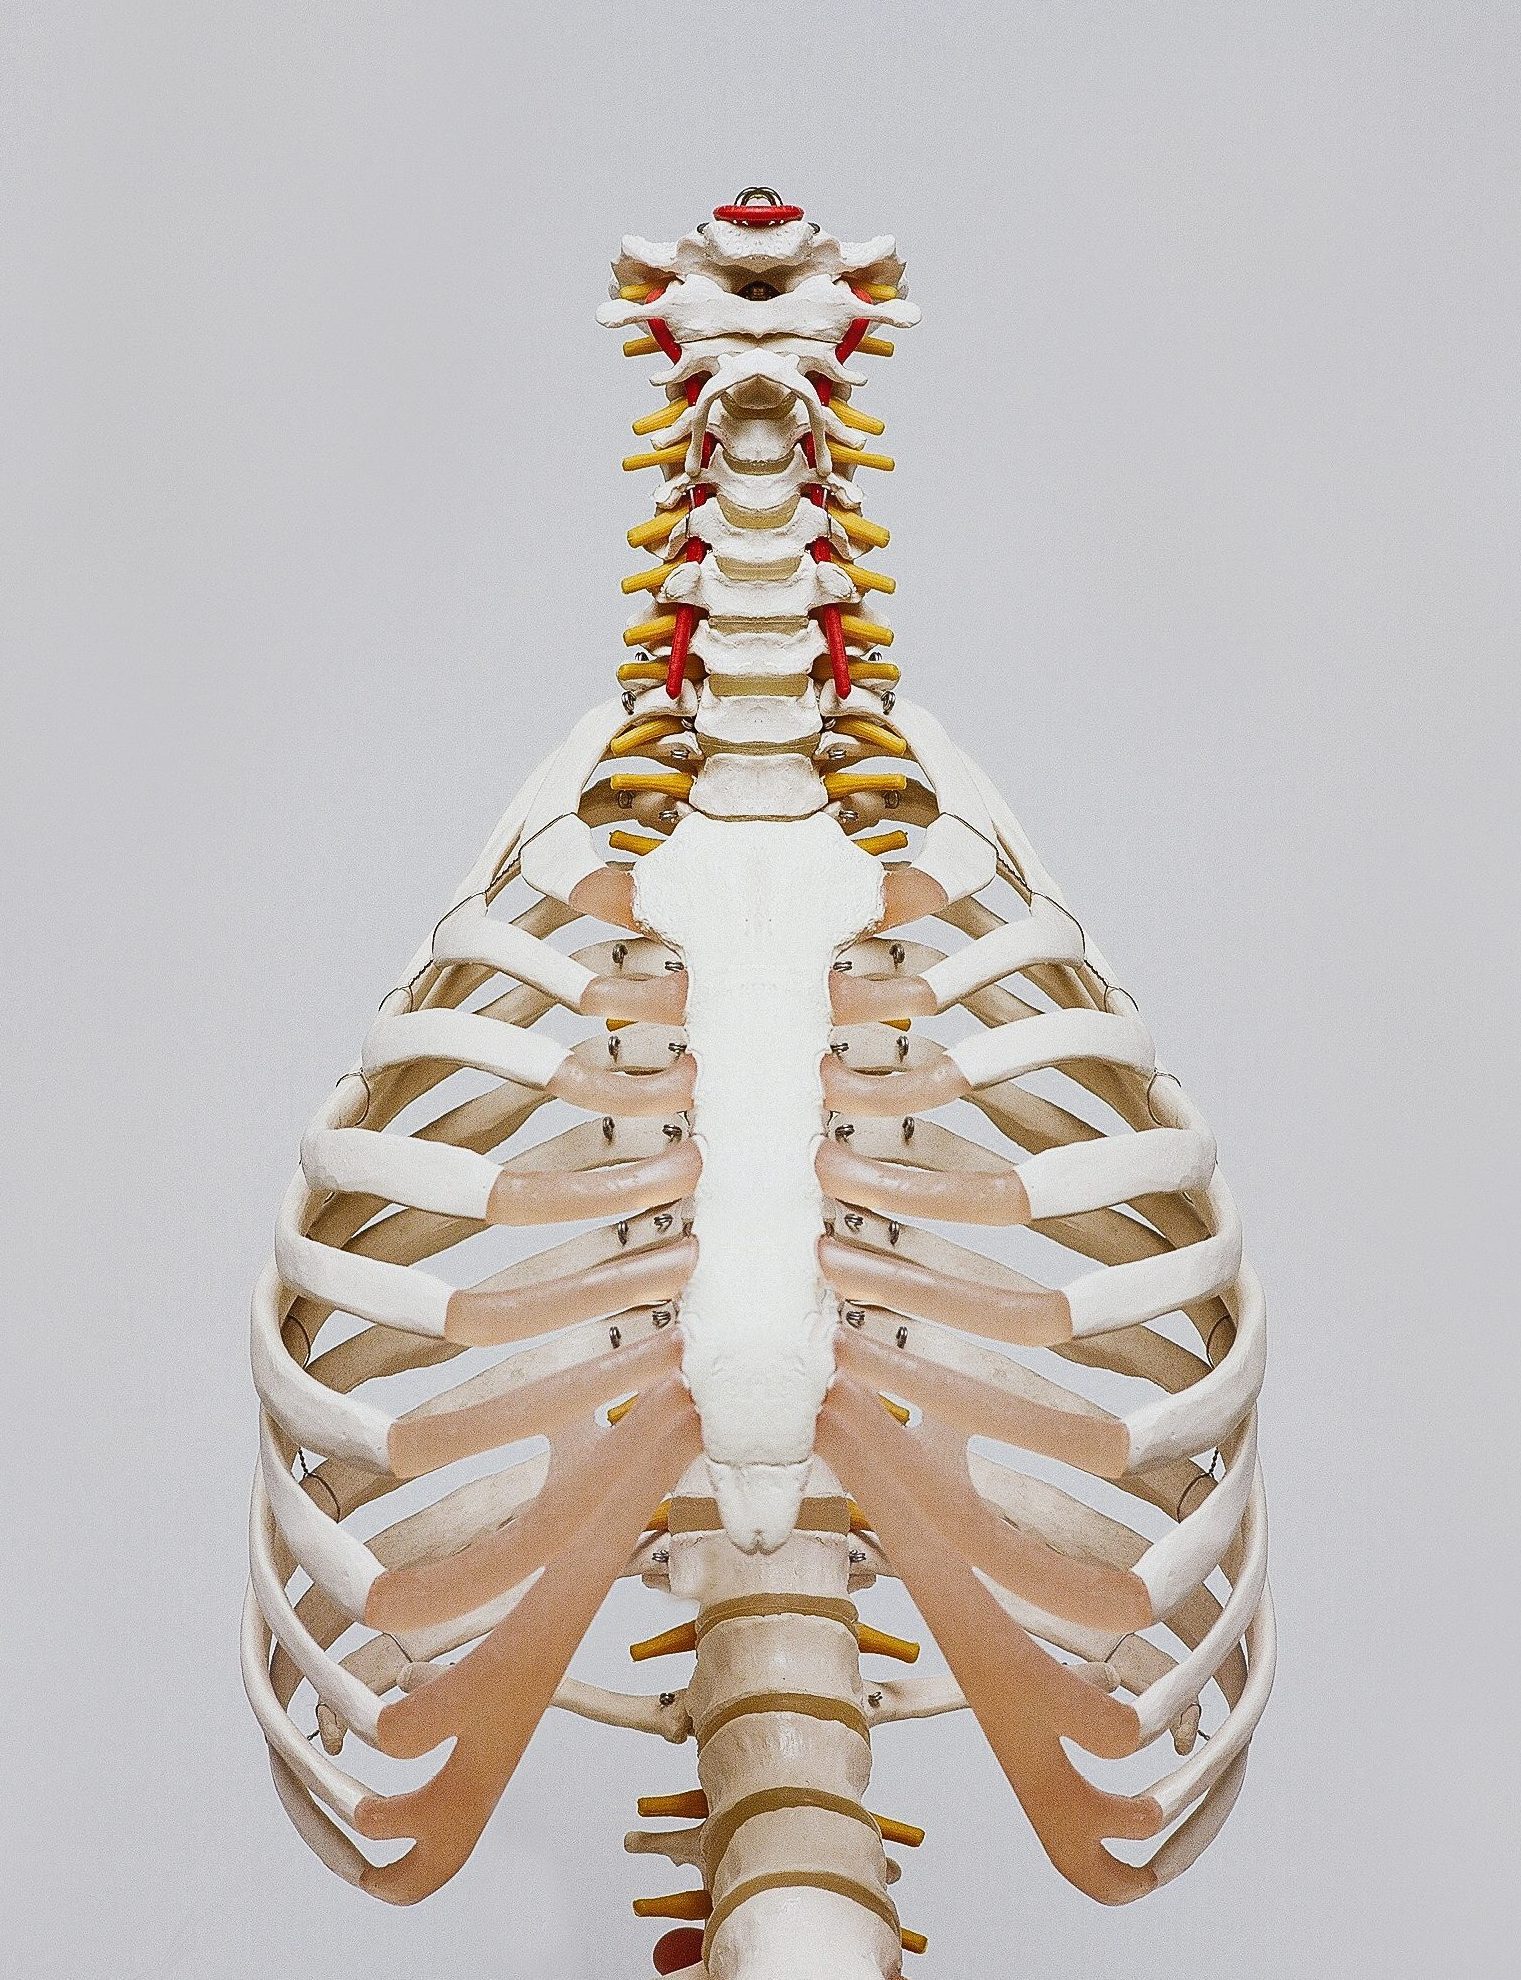 Modell eines Skelettes